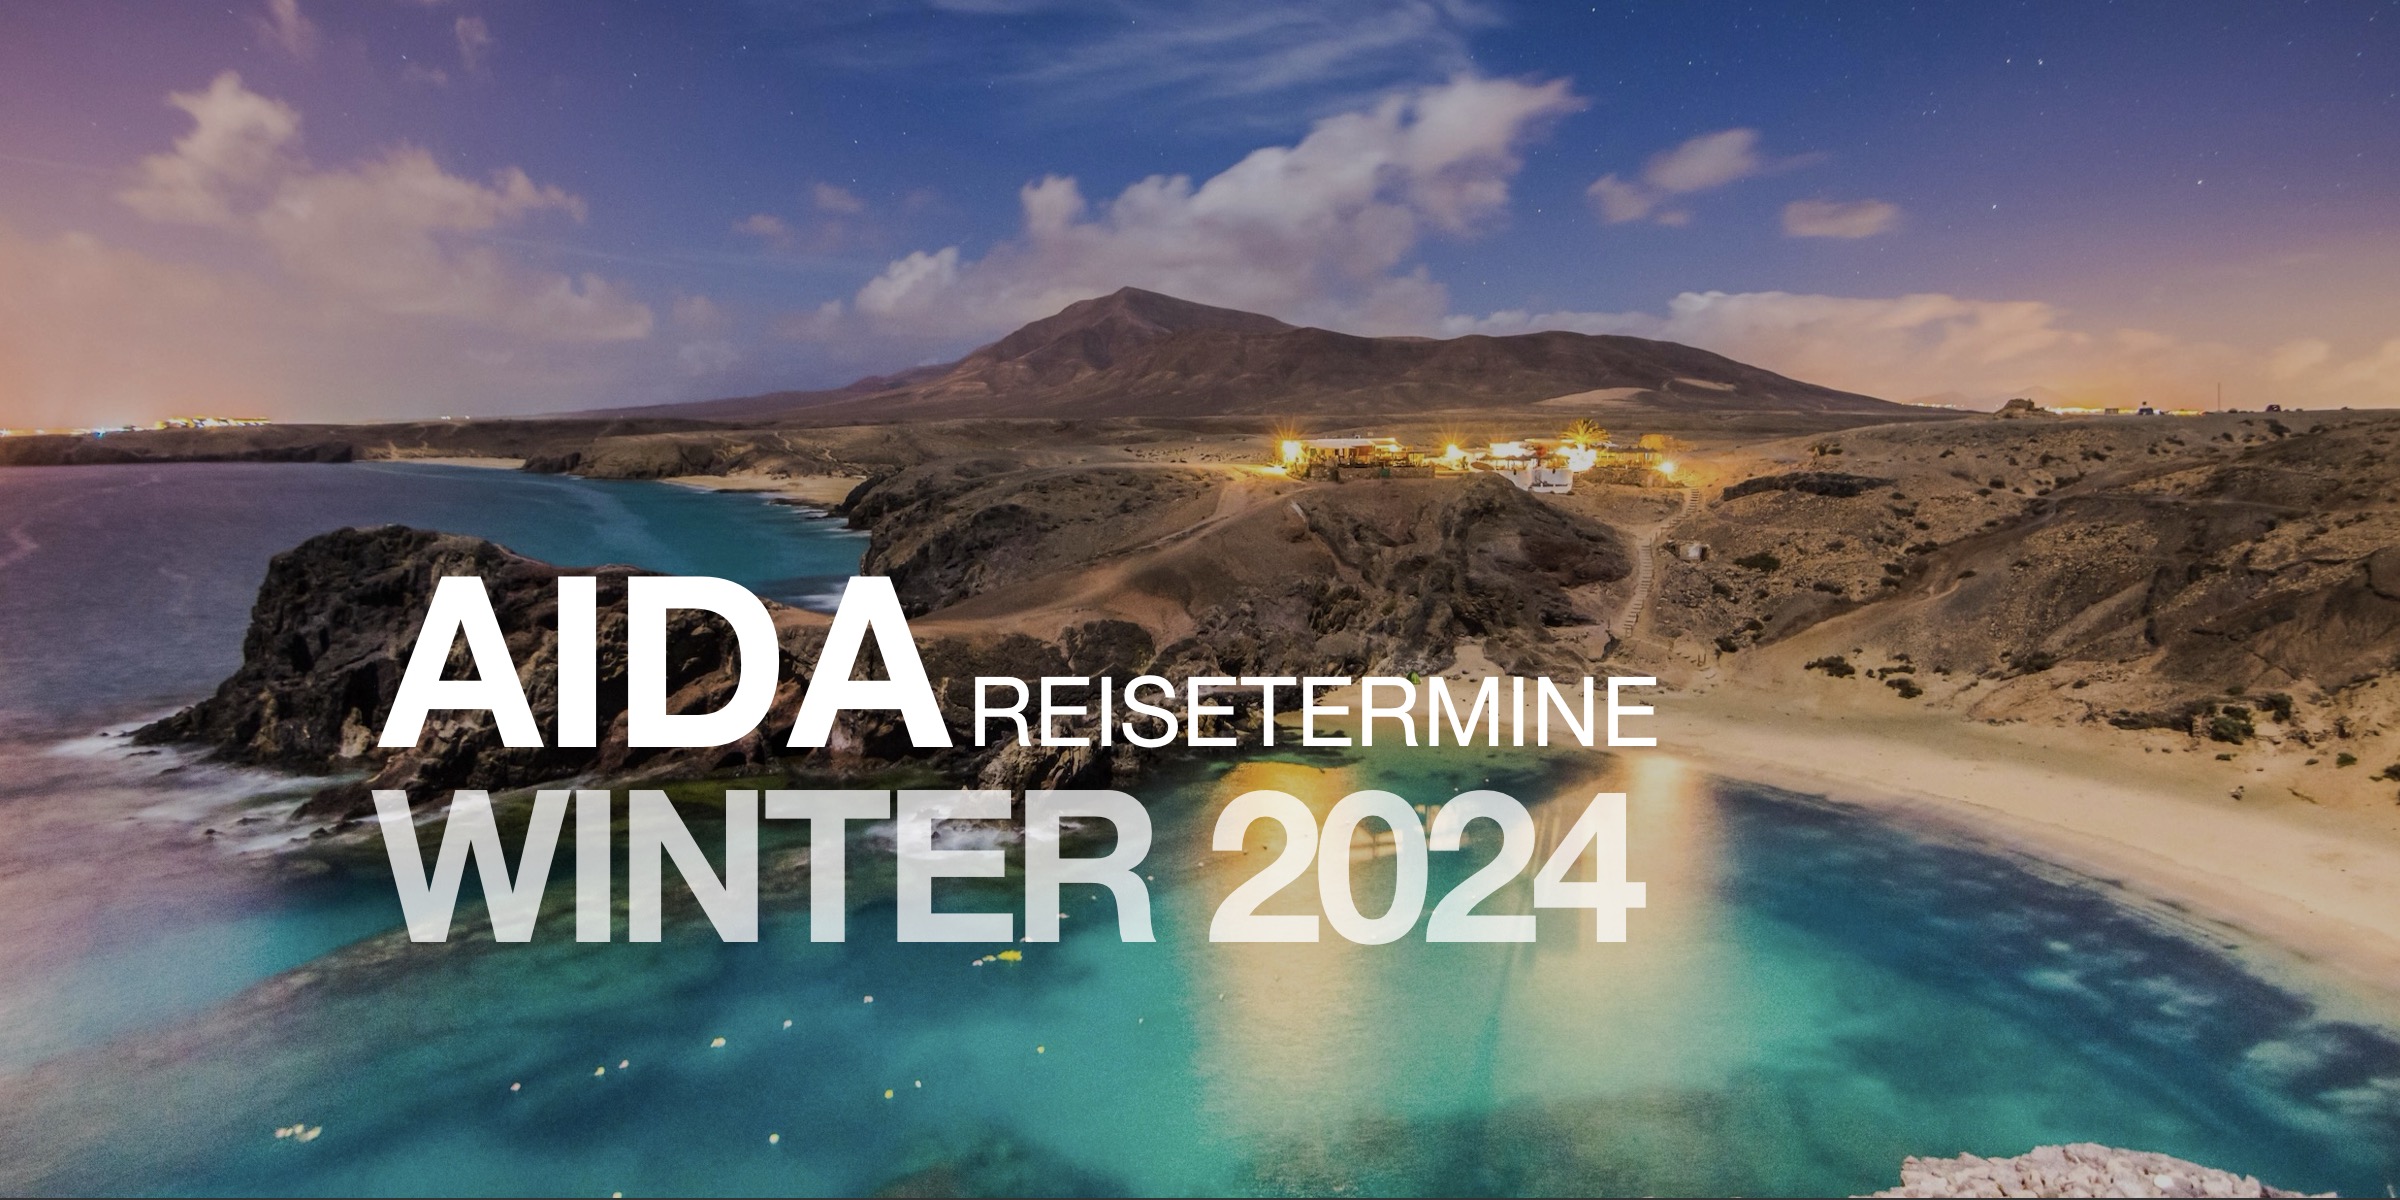 aida cruises routen winter 2024 kachel